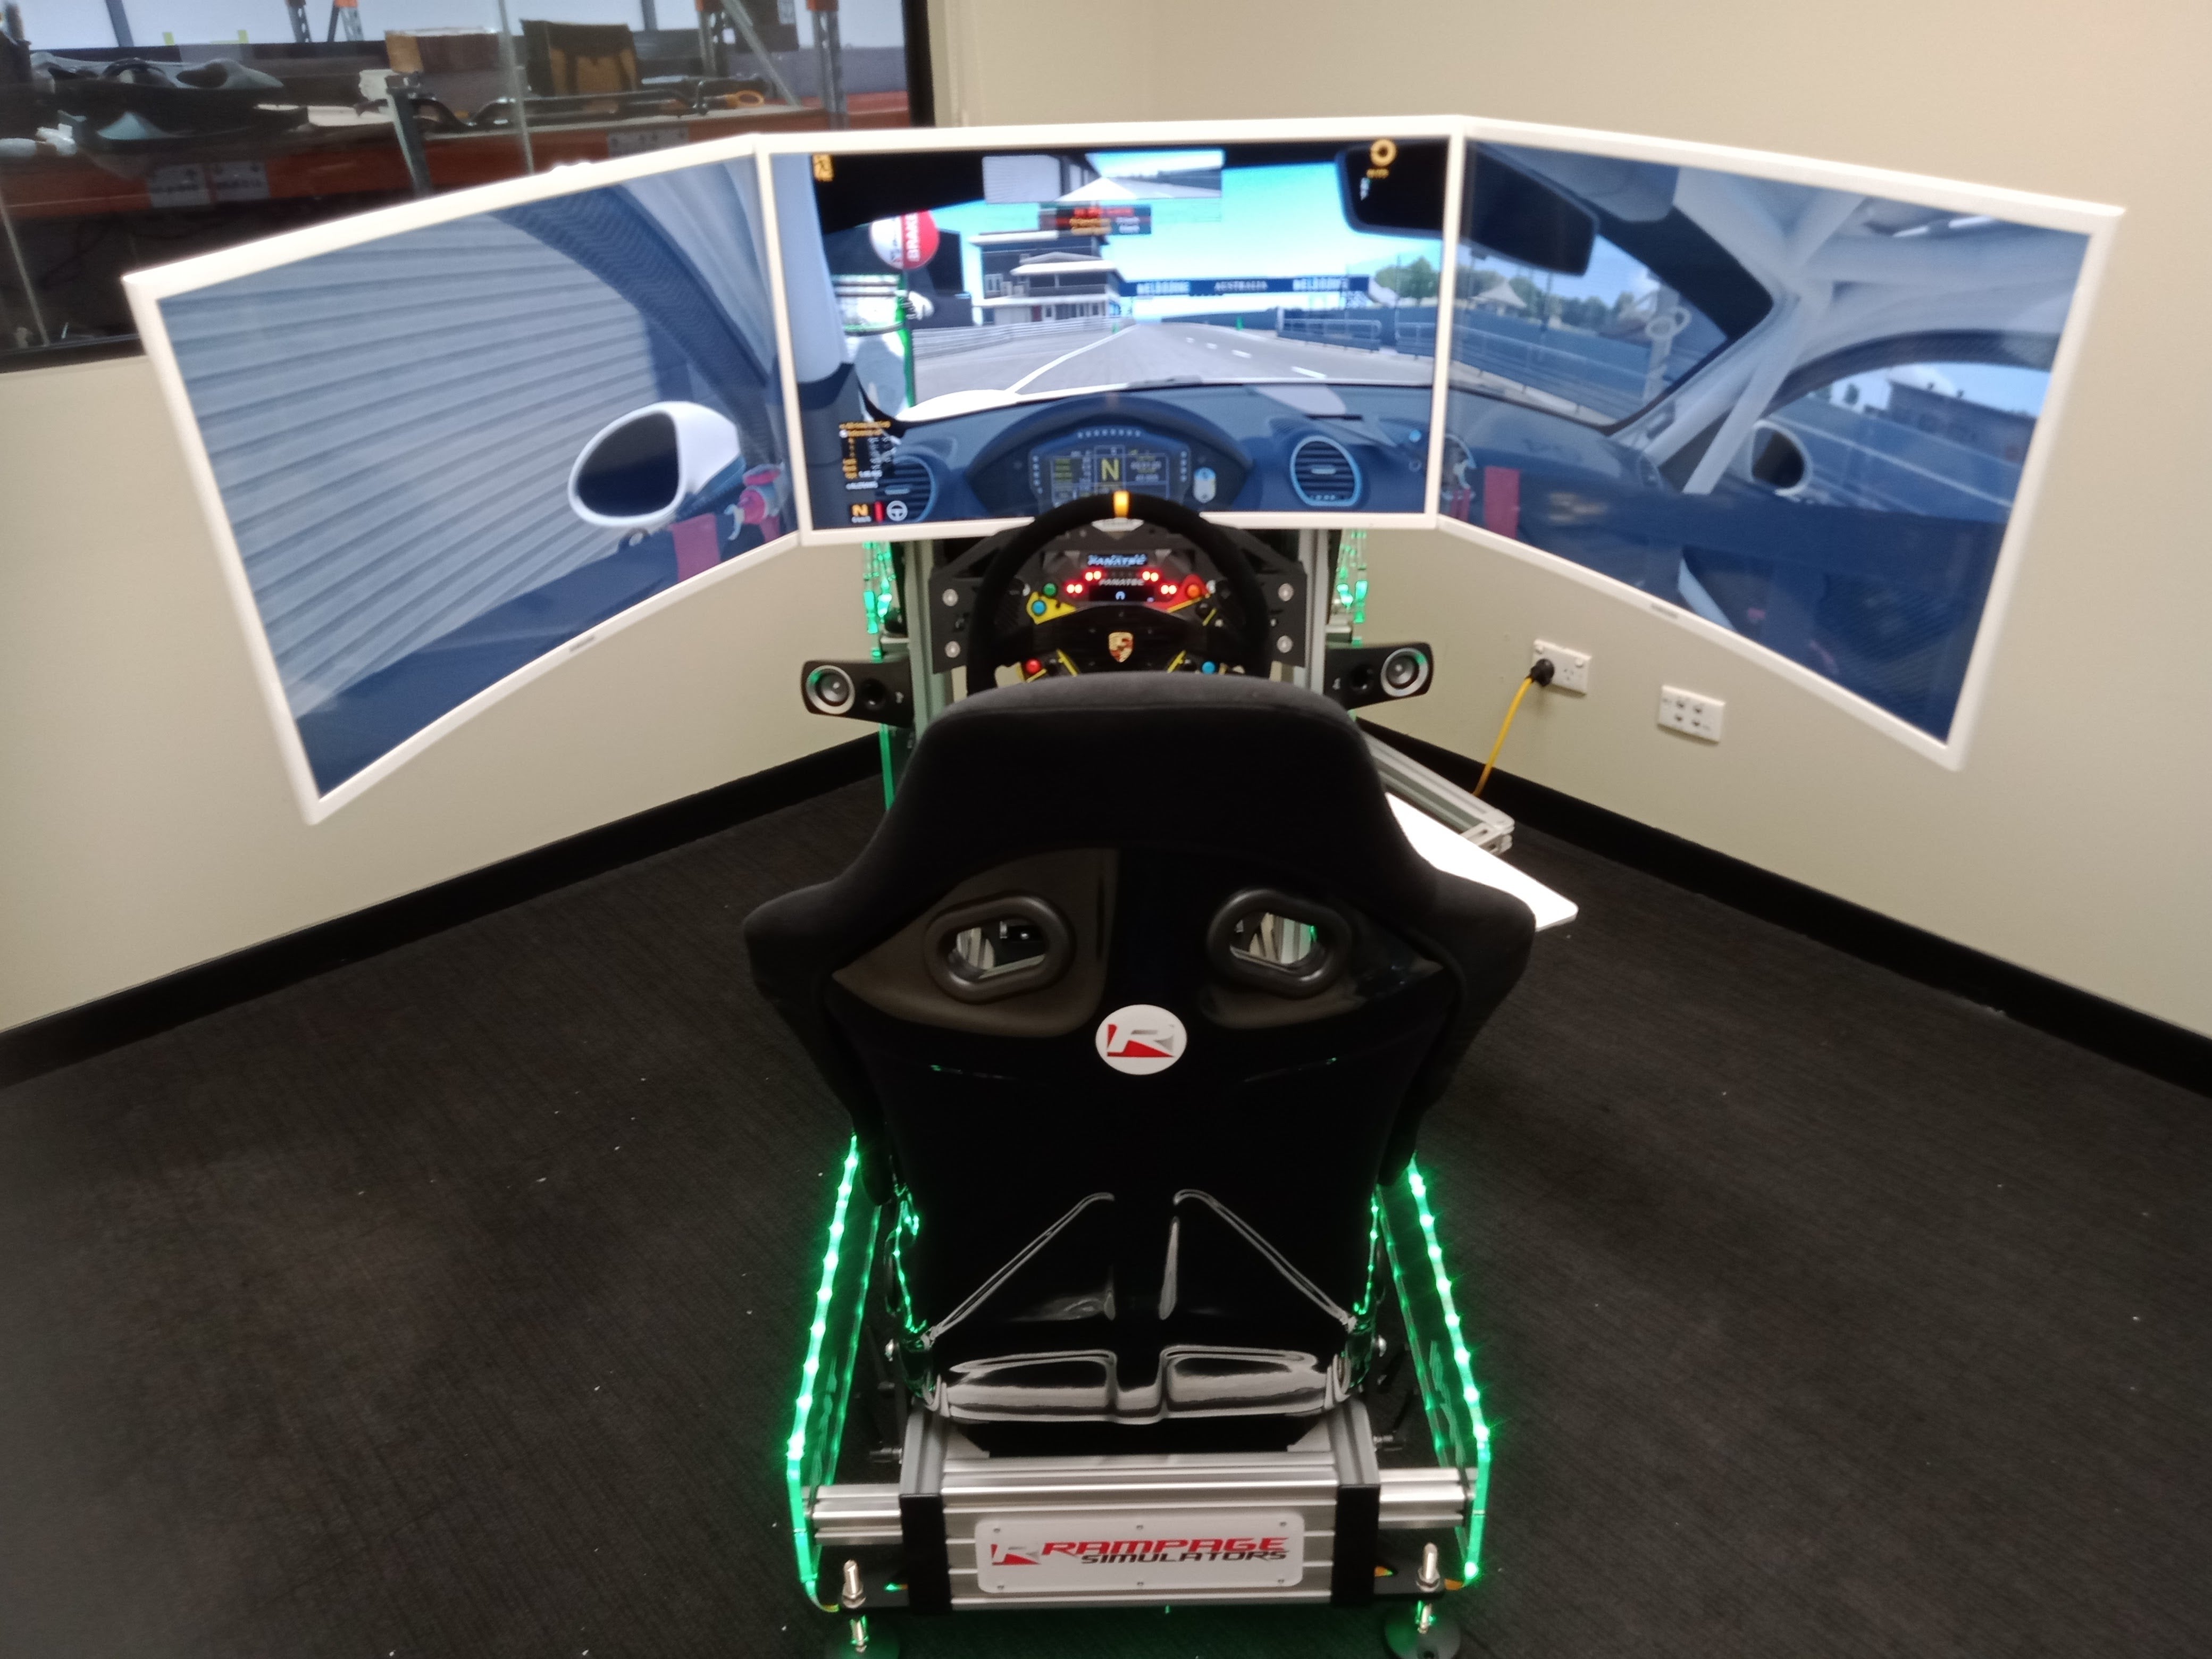 TK-01 Racing Simulator